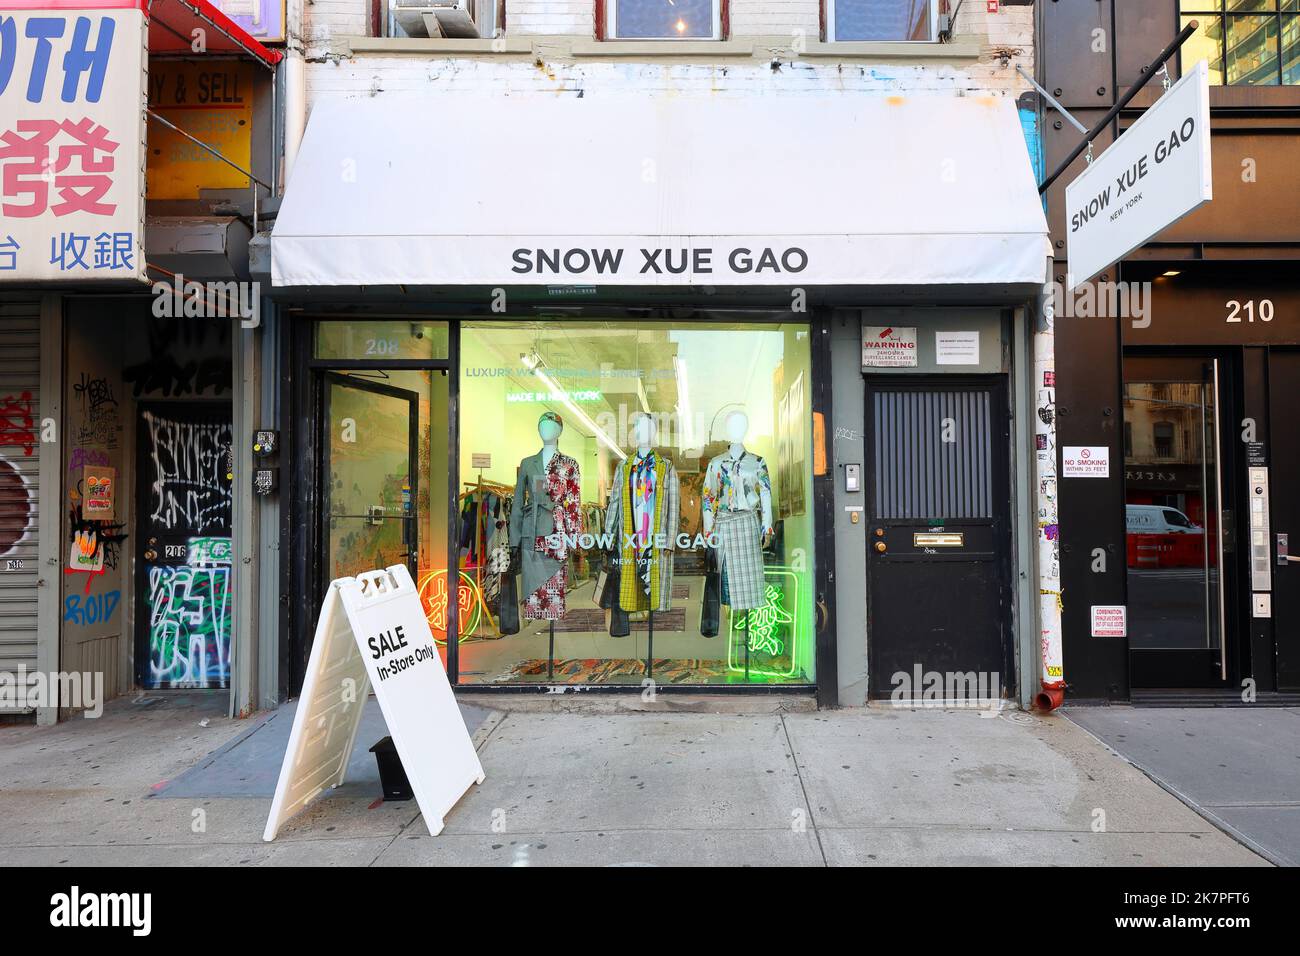 Snow Xue Gao, 208 Bowery, New York, NYC Schaufensterfoto einer chinesischen Modedesigner-Bekleidungsboutique im Nolita-Viertel von Manhattan Stockfoto